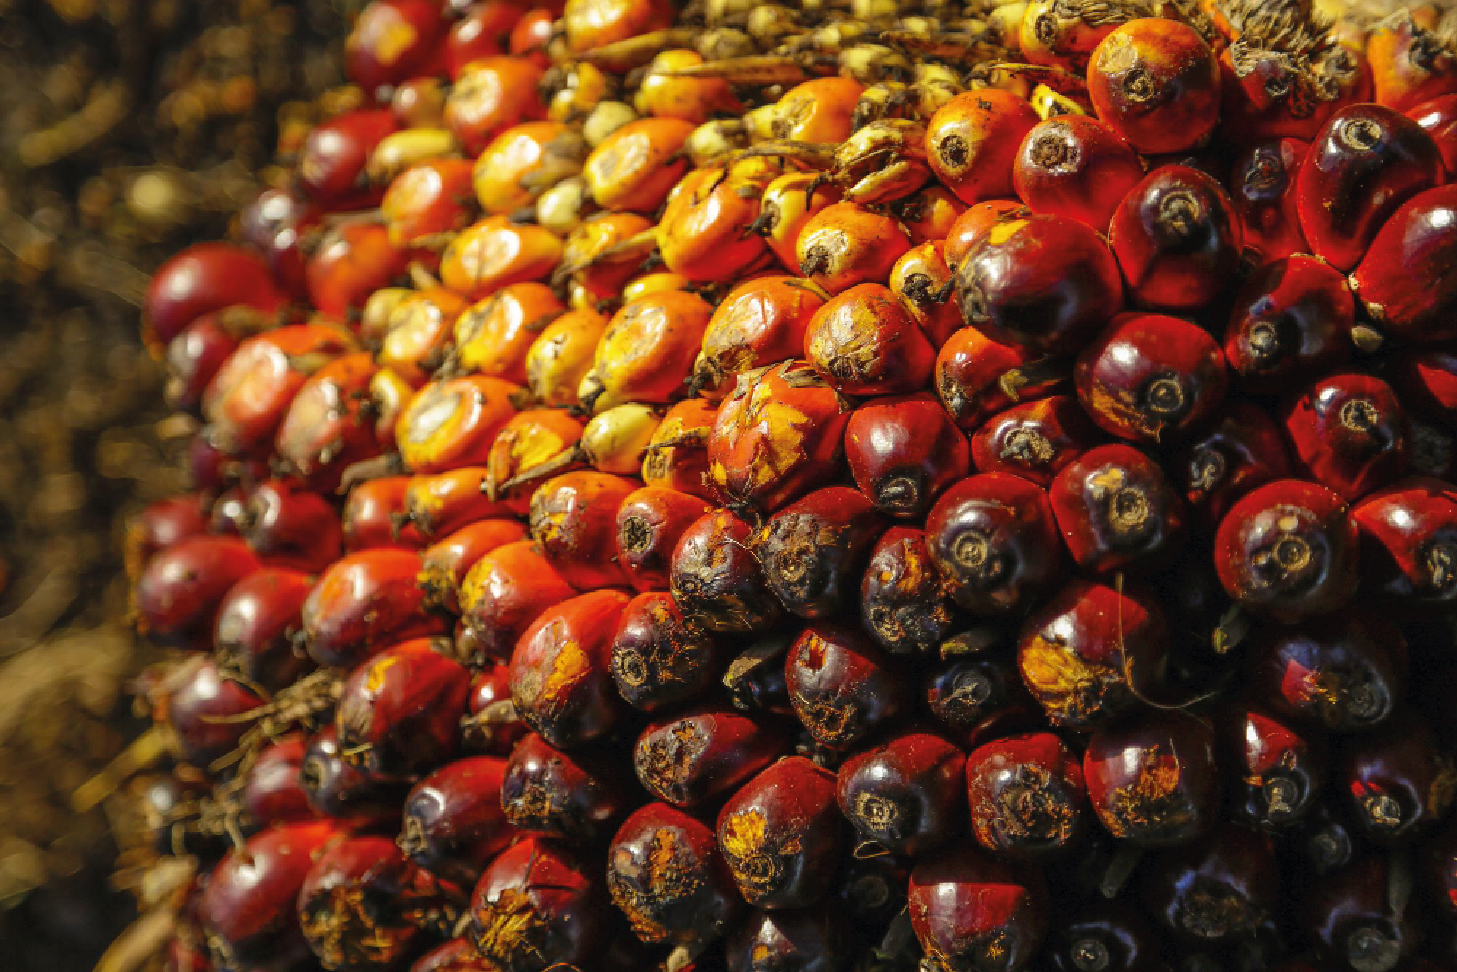 Aceite de palma: conoce qué es, qué alimentos lo contienen y qué riesgos supone